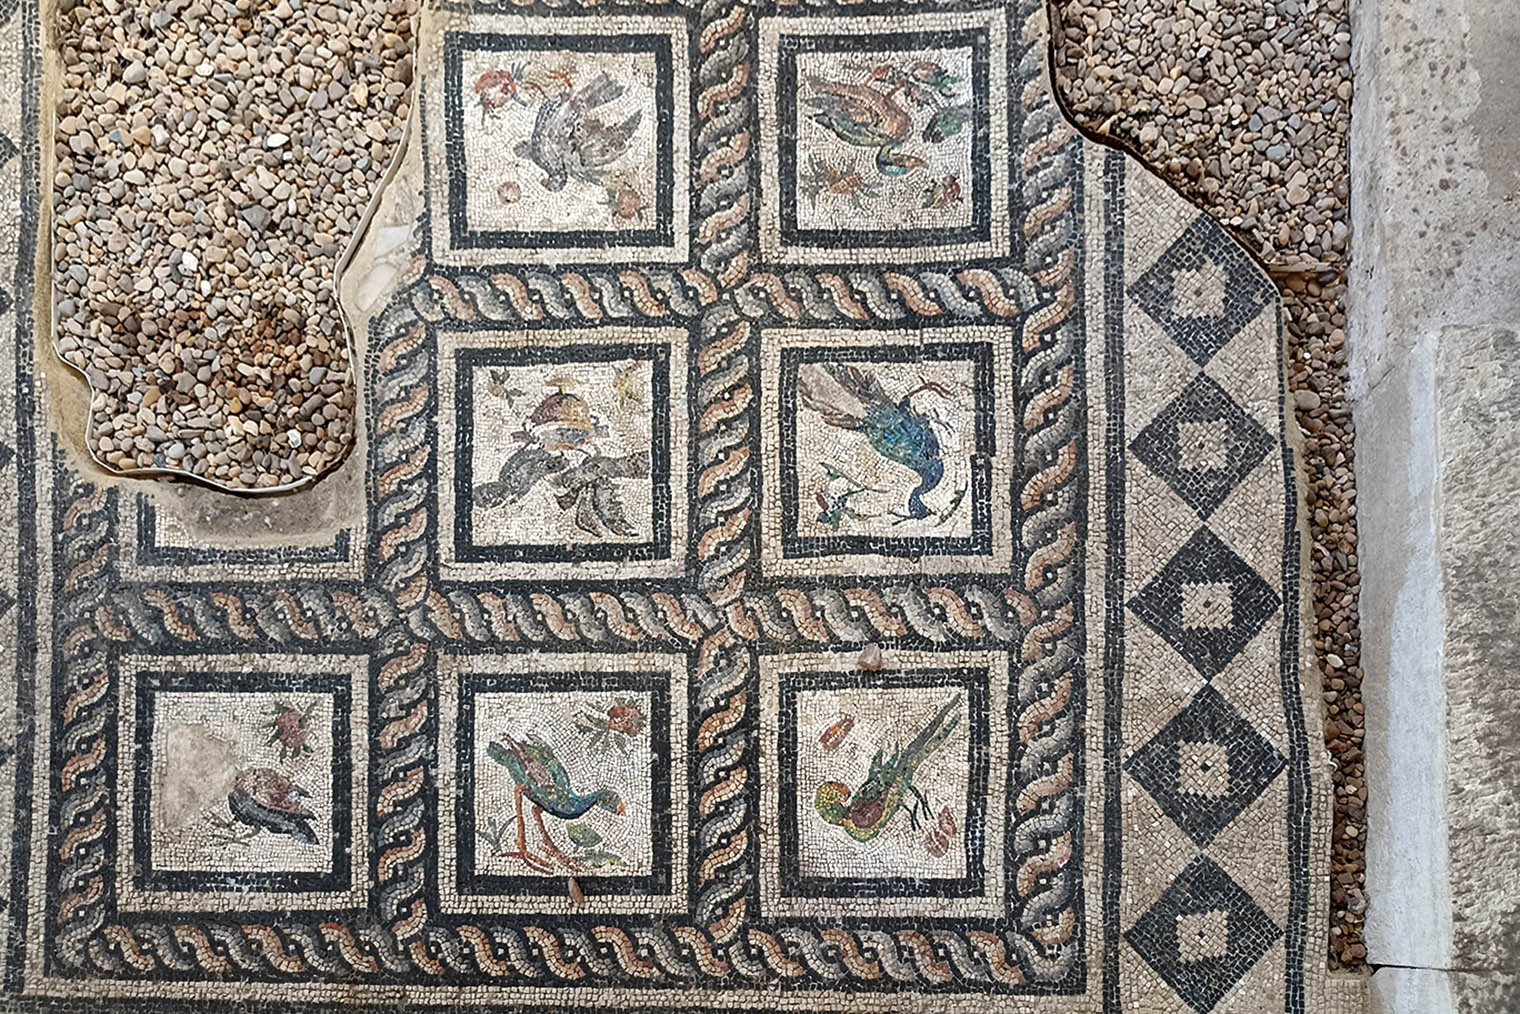 Мозаика на полу римской виллы. Птиц изначально было девять, но квадратики с двумя из них не уцелели